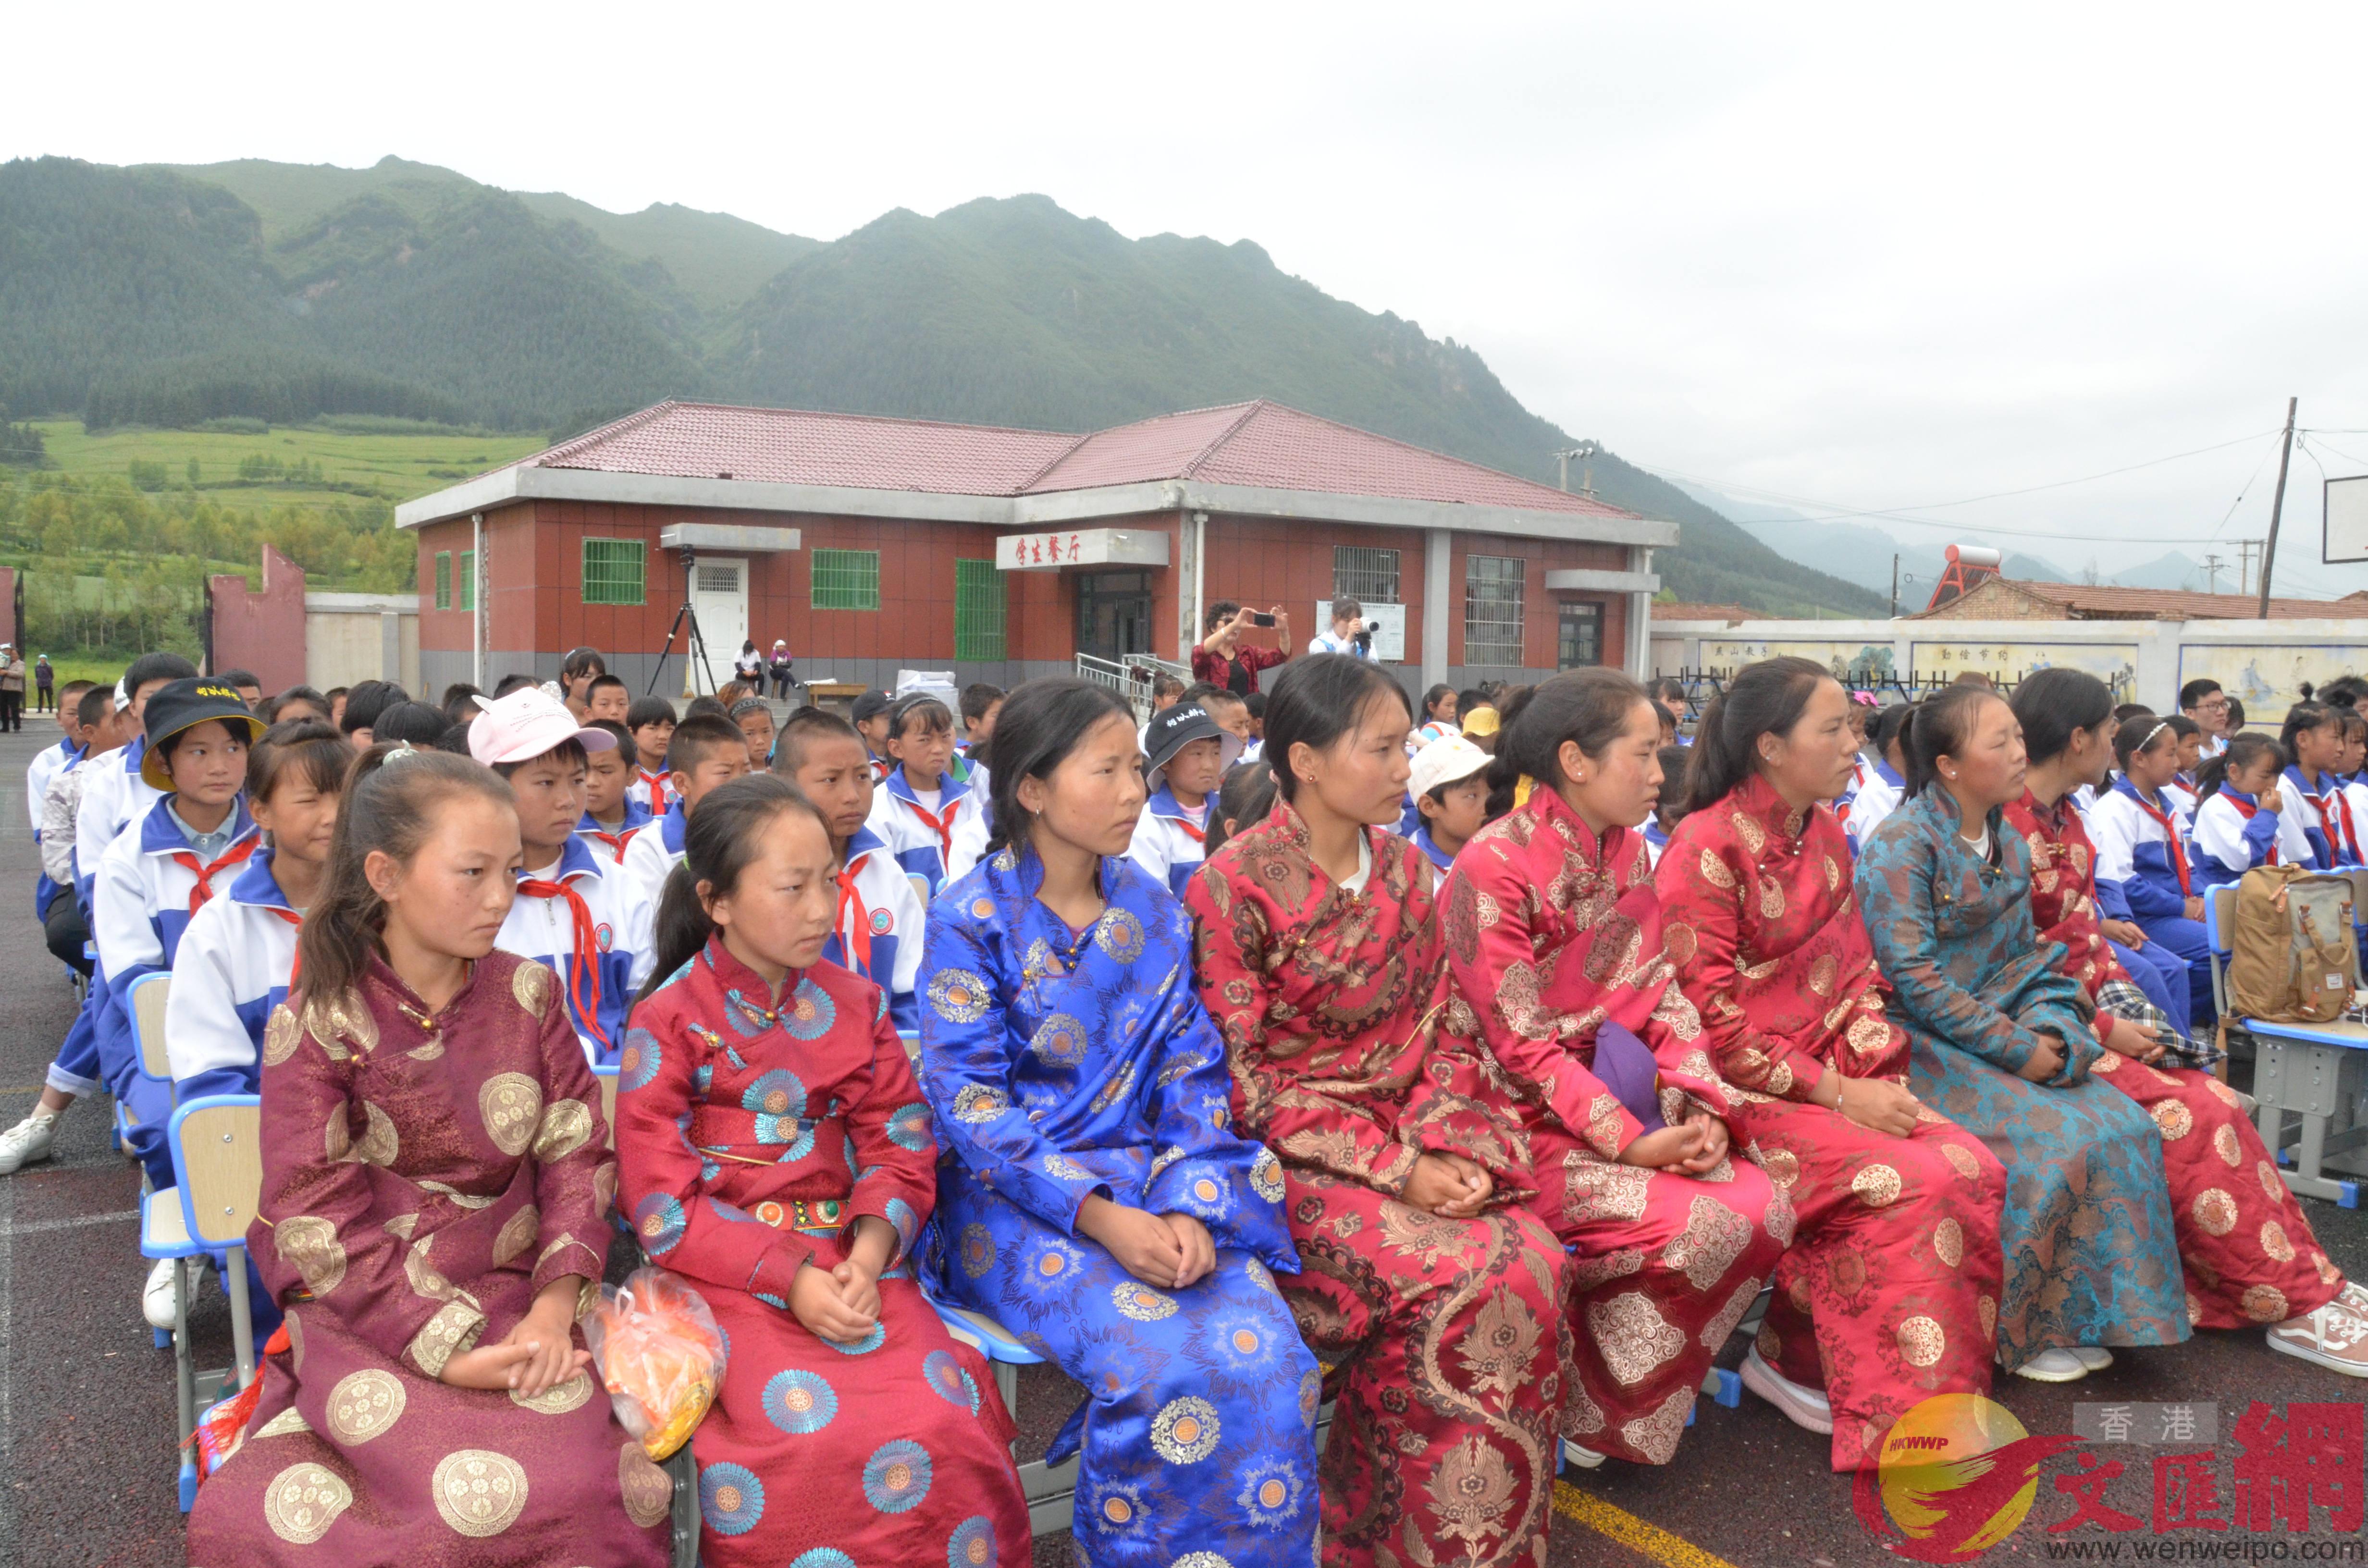 曾受到幫助的青海黃南藏族自治州的藏族學生與卷槽小學學生一起參與了當天的上午u守護天使青藏行v十周年活動C]記者張仕珍 攝^